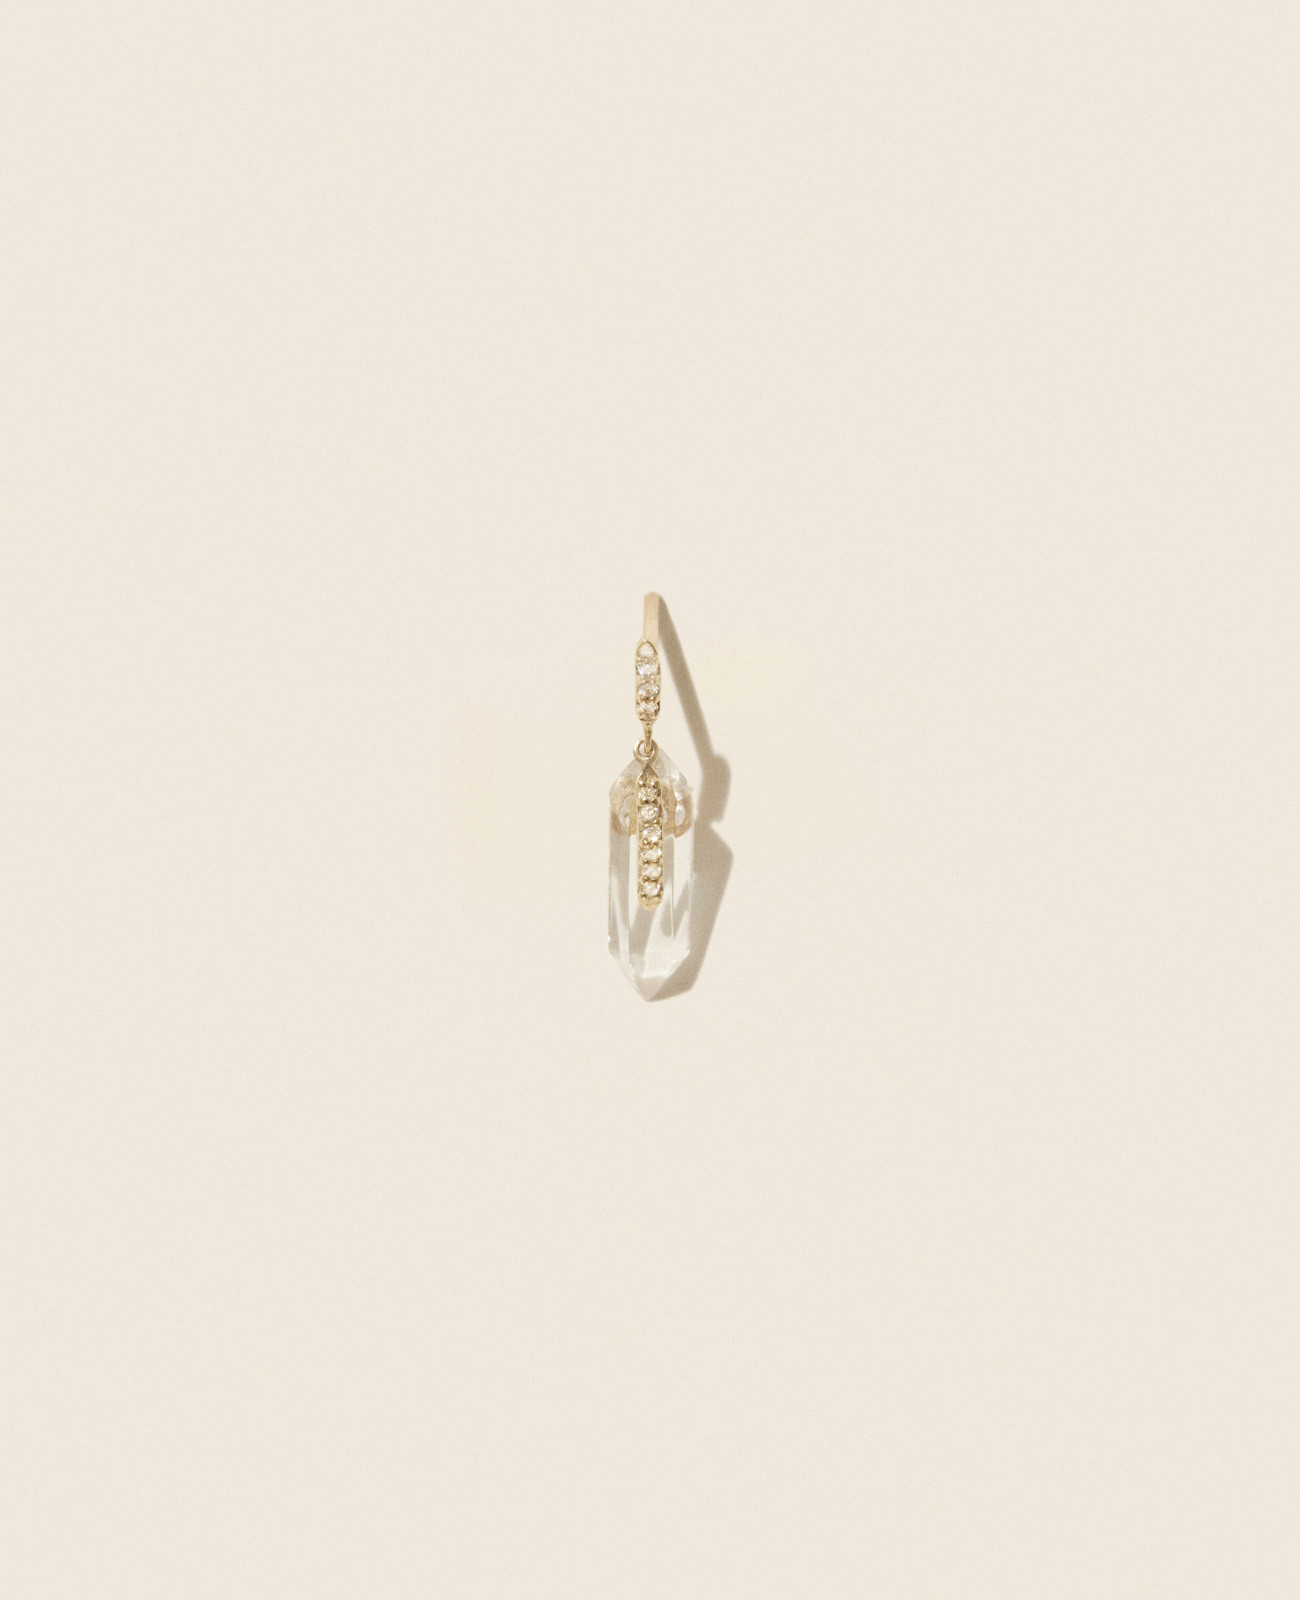 boucle oreille MOON N°2 bijoux pascale monvoisin paris